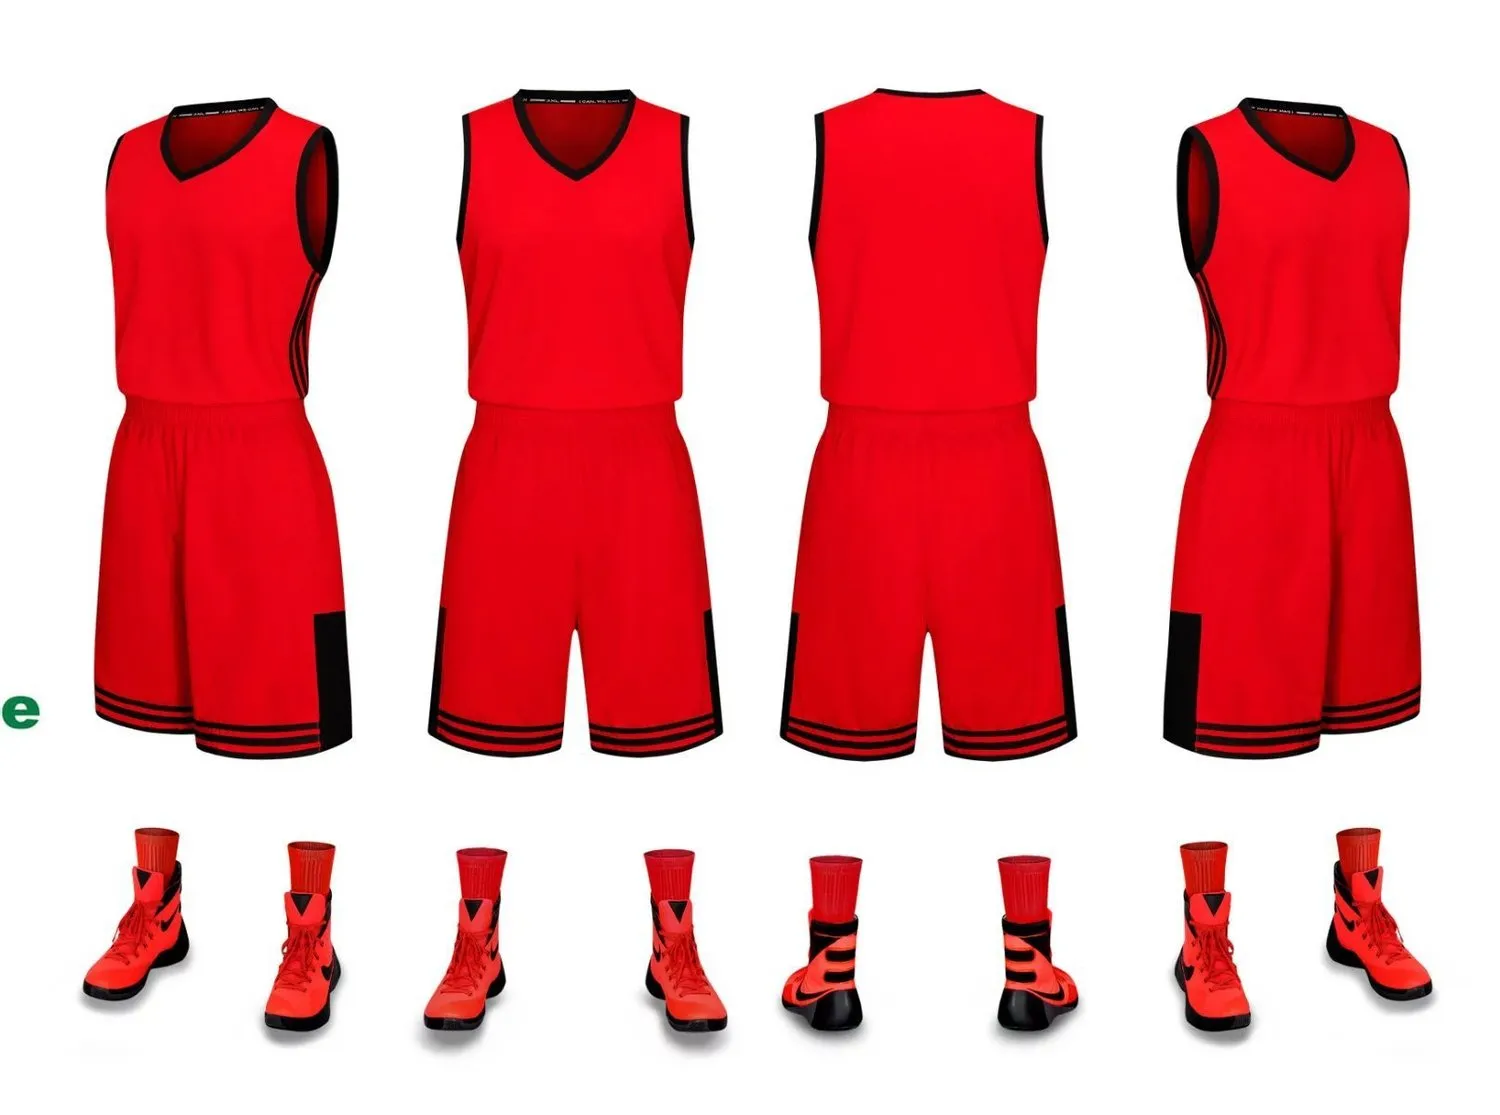 2019 novas camisas de basquete em branco logotipo impresso tamanho Mens S-XXL preço barato transporte rápido boa qualidade NOVO ouro preto vermelho RBG0012r